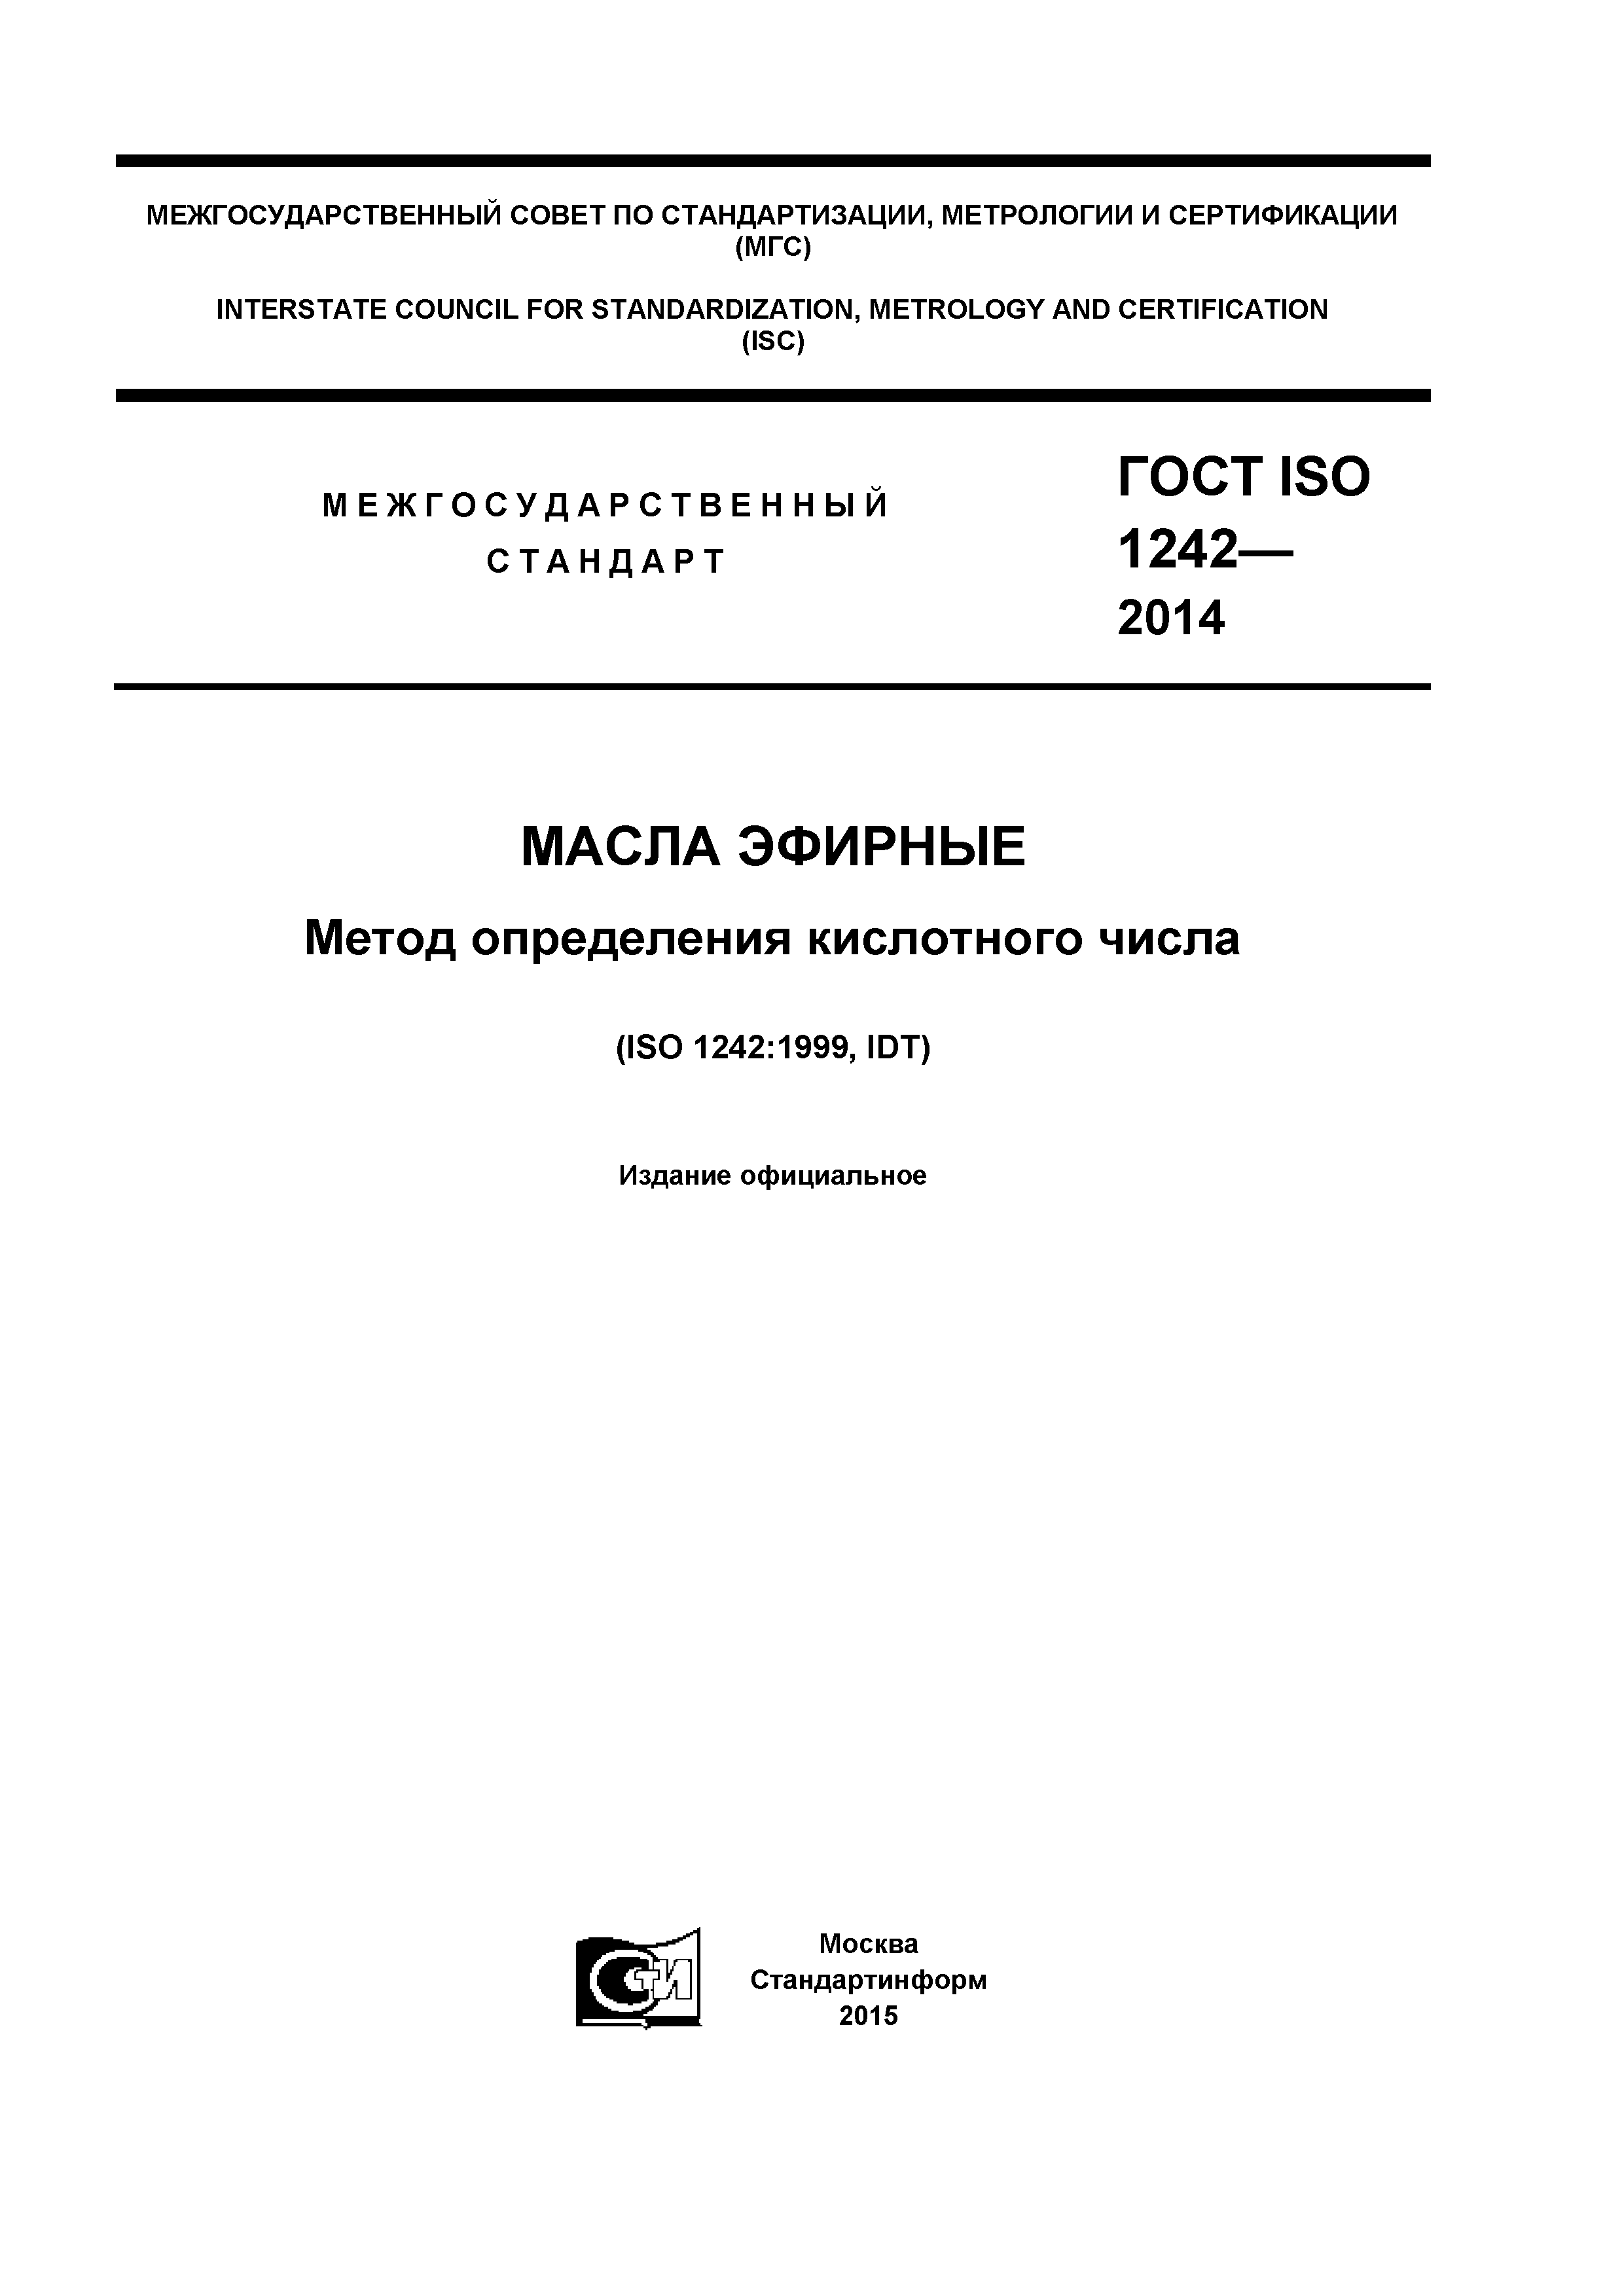 ГОСТ ISO 1242-2014